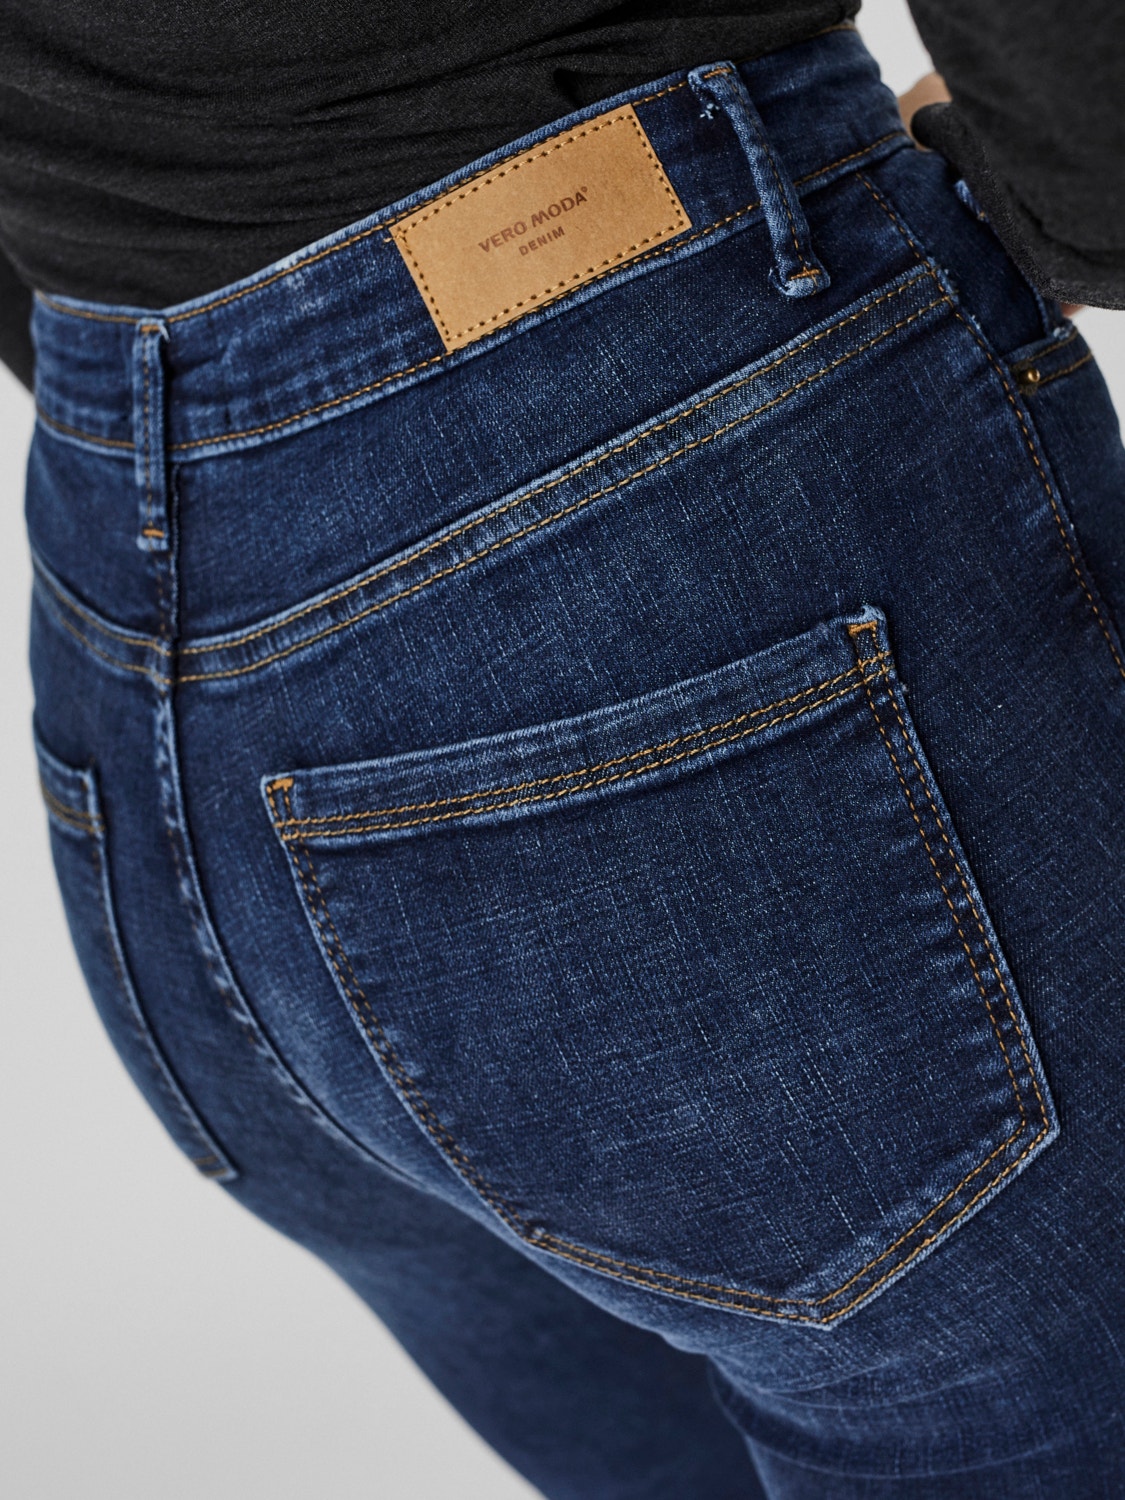 Vero Moda VMSOPHIA Taille haute Skinny Fit Jeans -Dark Blue Denim - 10248830